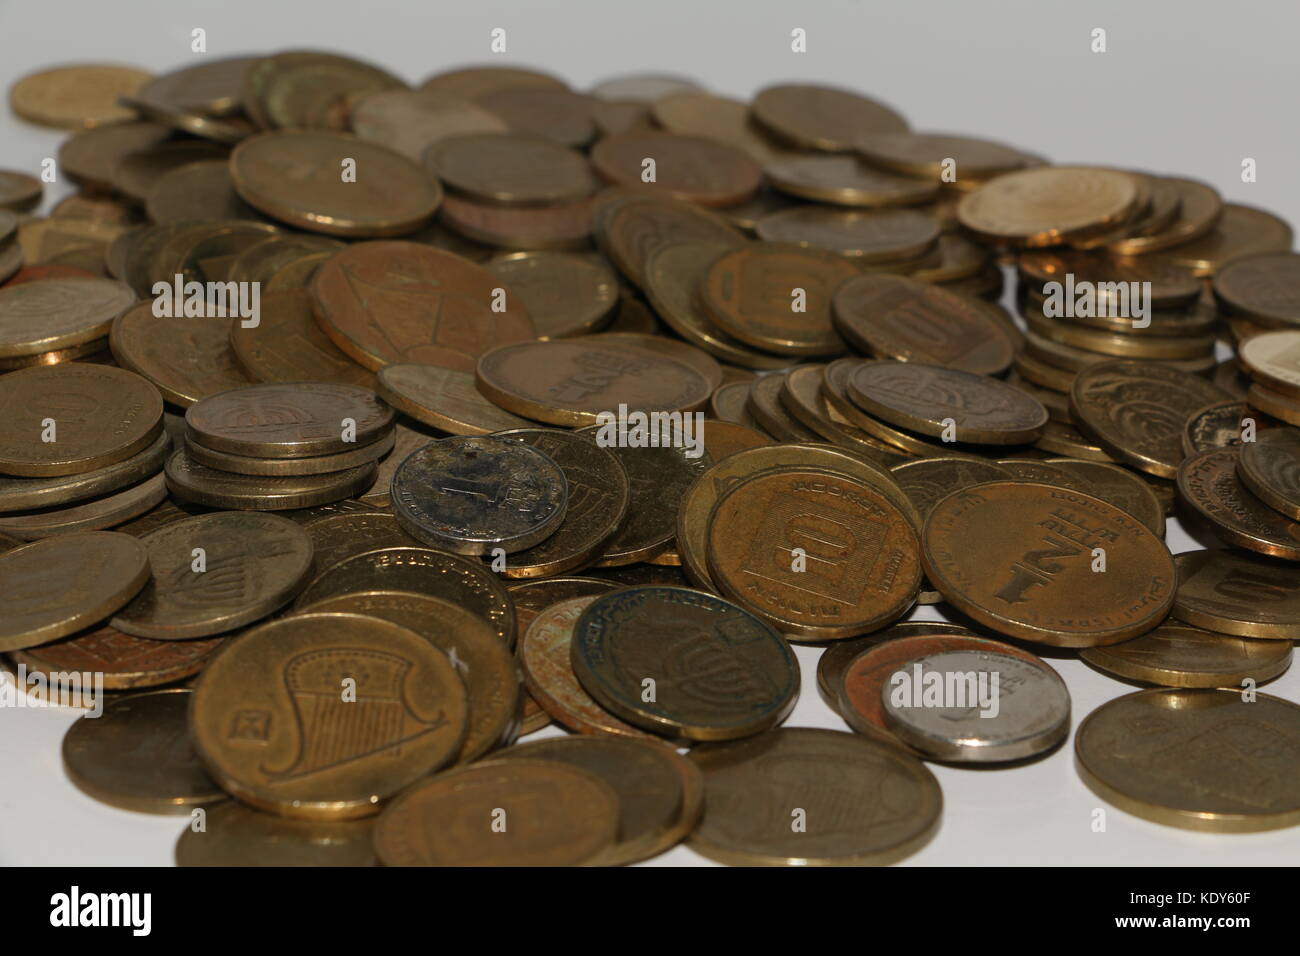 Münzen Israel 21,70 neue Schekel Urlaubsgeld zu verkaufen in Baden